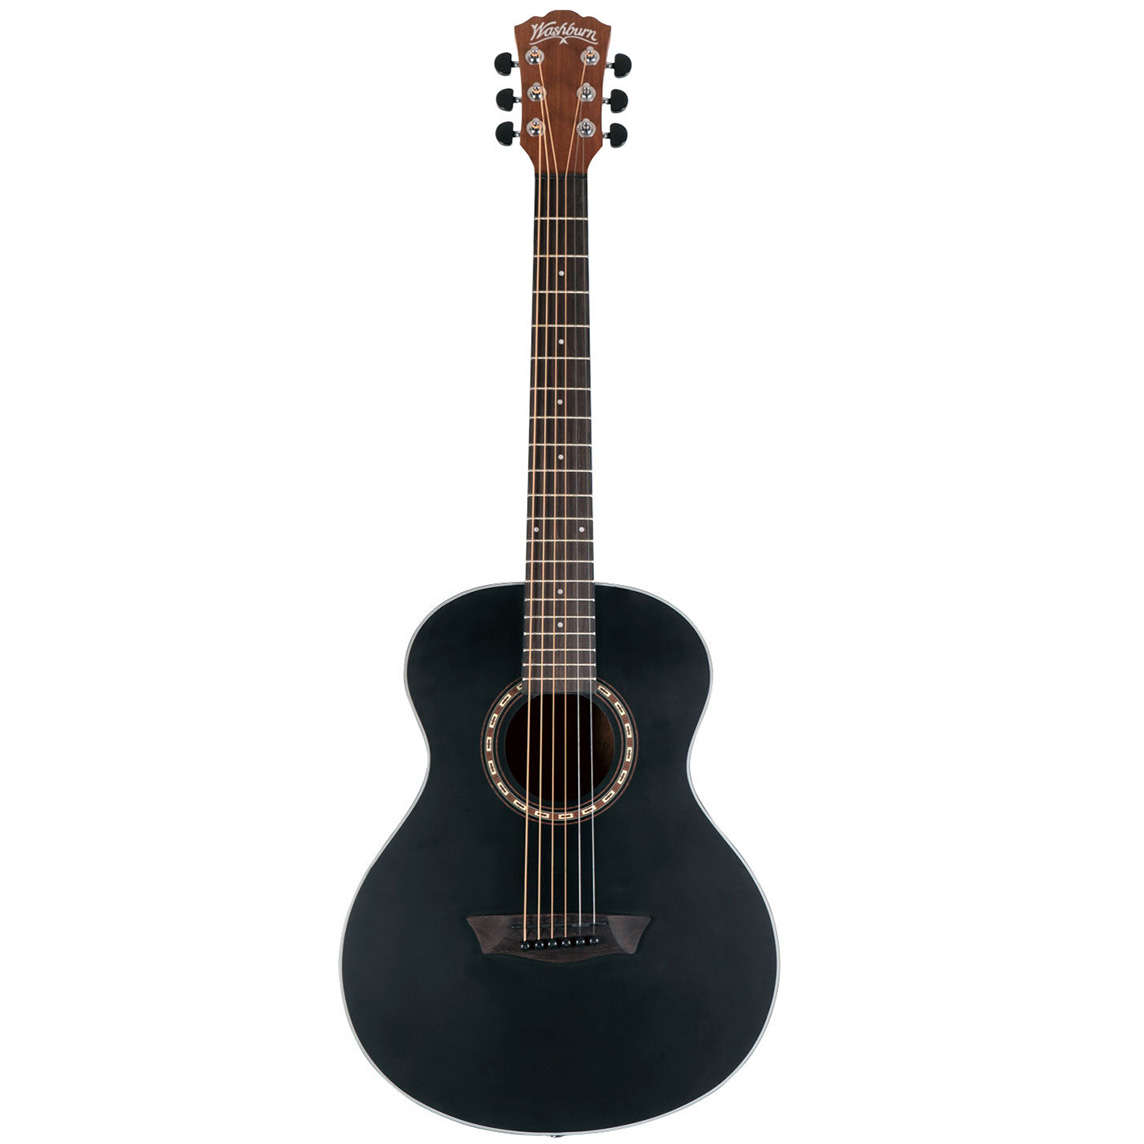 WASHBURN ワッシュバーン G-MINI 5 Black Matte アコースティックギター ミニギター コンパクト ショートスケール 艶消し塗装 ブラックマ